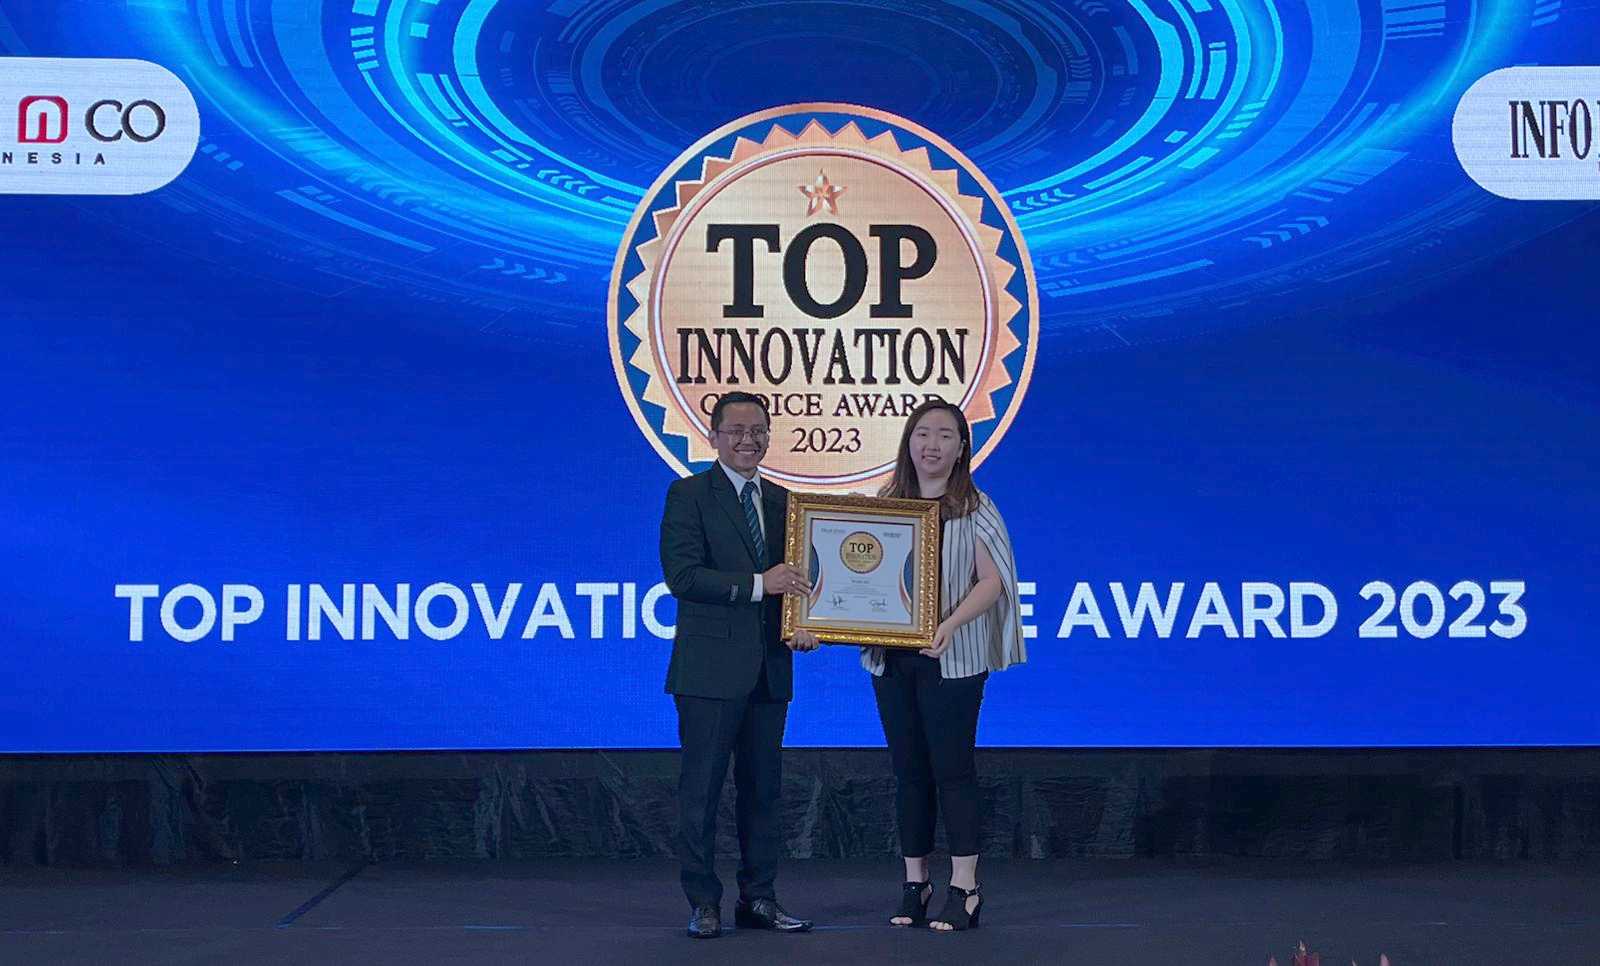 MAKUKU Mendapatkan Penghargaan Inovasi Popok dengan Inti Struktur Super Absorbent Polymer (SAP) Pertama di Indonesia dari INFOBRAND.ID